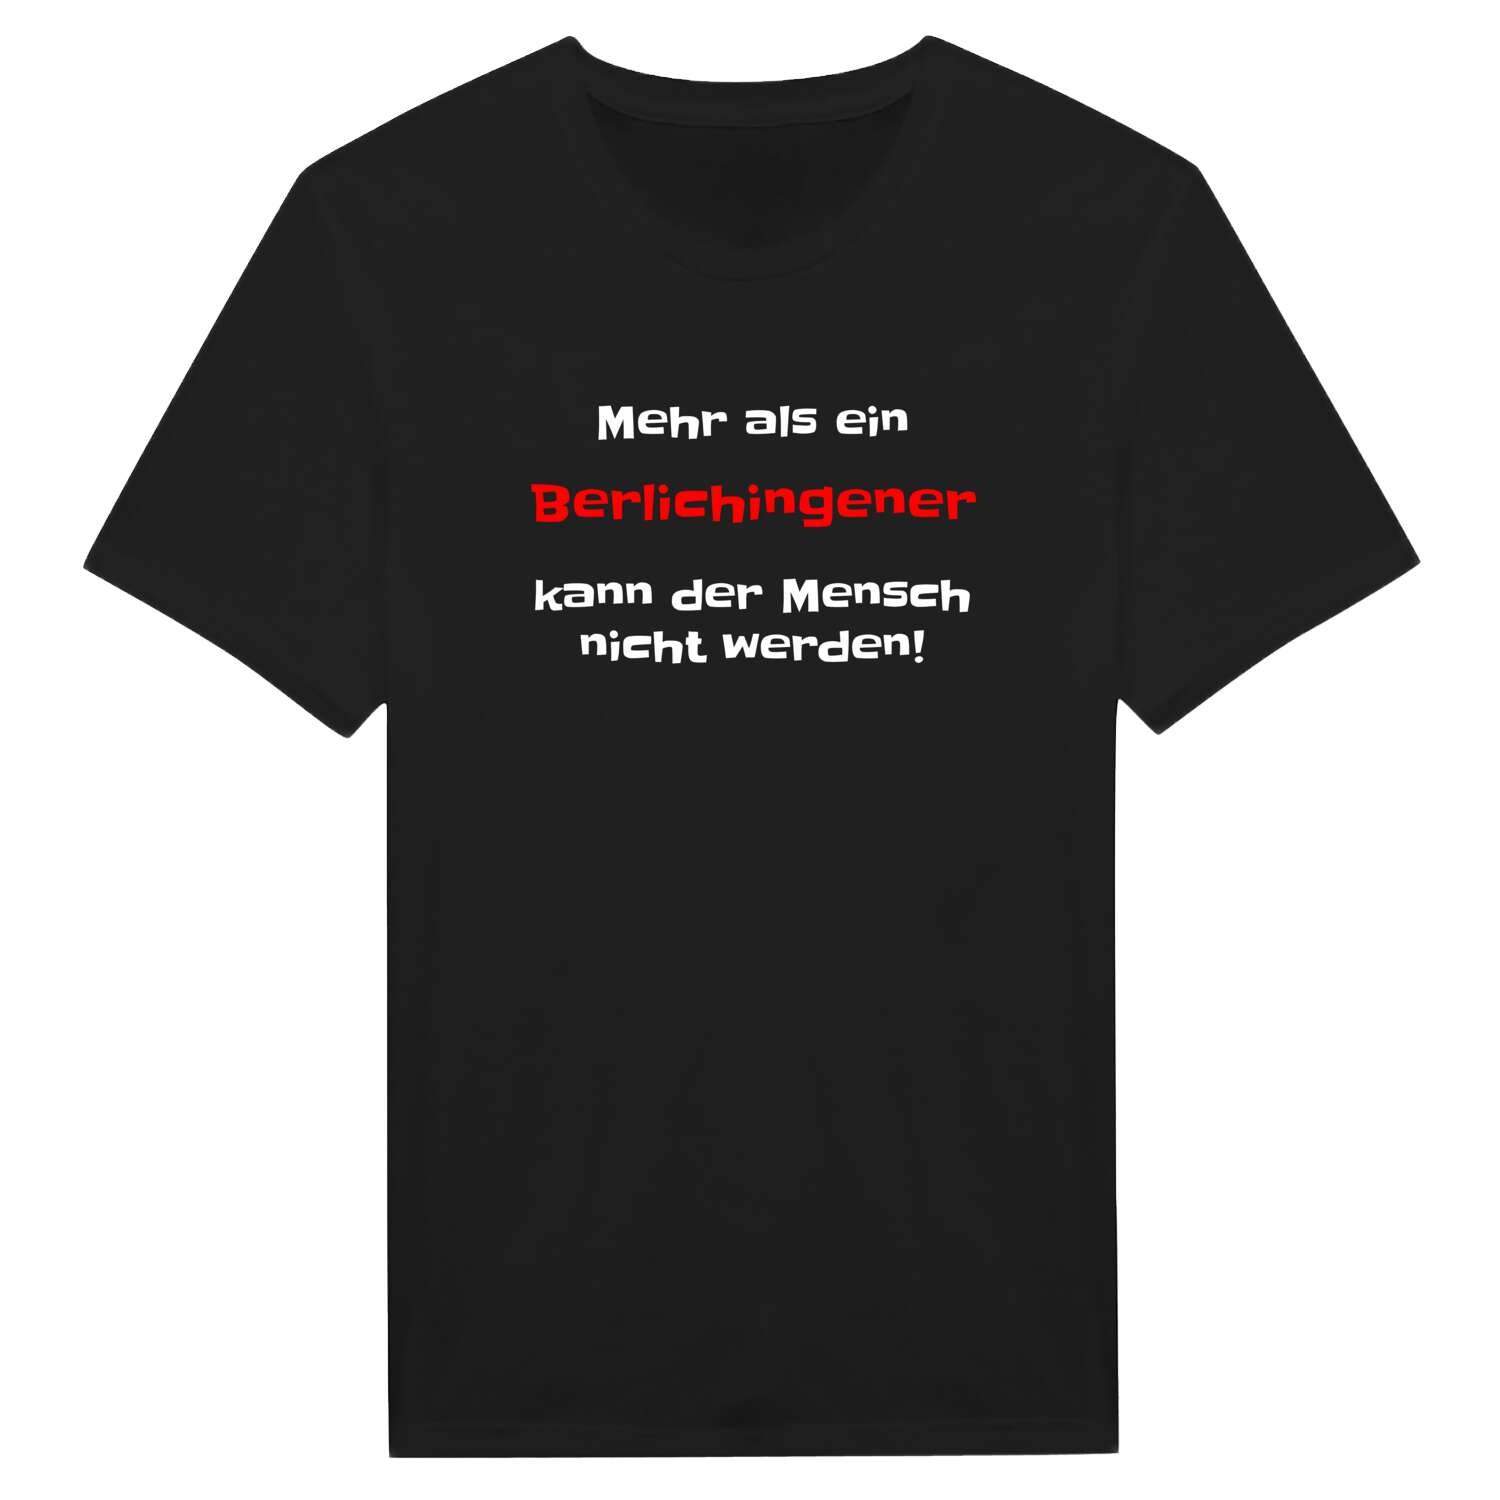 Berlichingen T-Shirt »Mehr als ein«